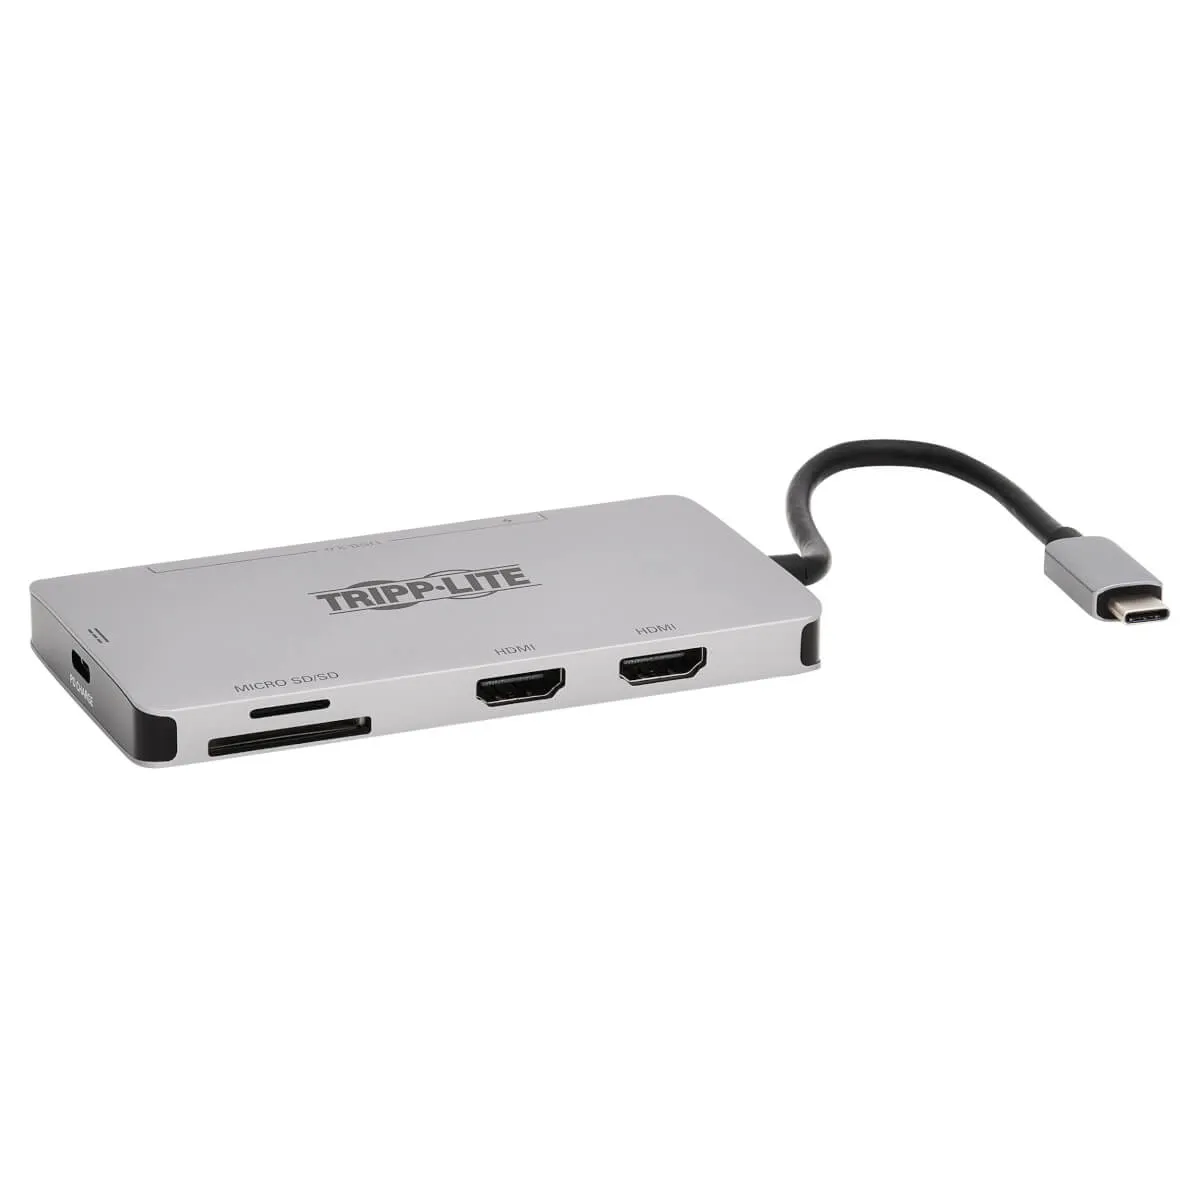 Achat EATON TRIPPLITE USB-C Dock Dual Display - 4K 60Hz et autres produits de la marque Tripp Lite